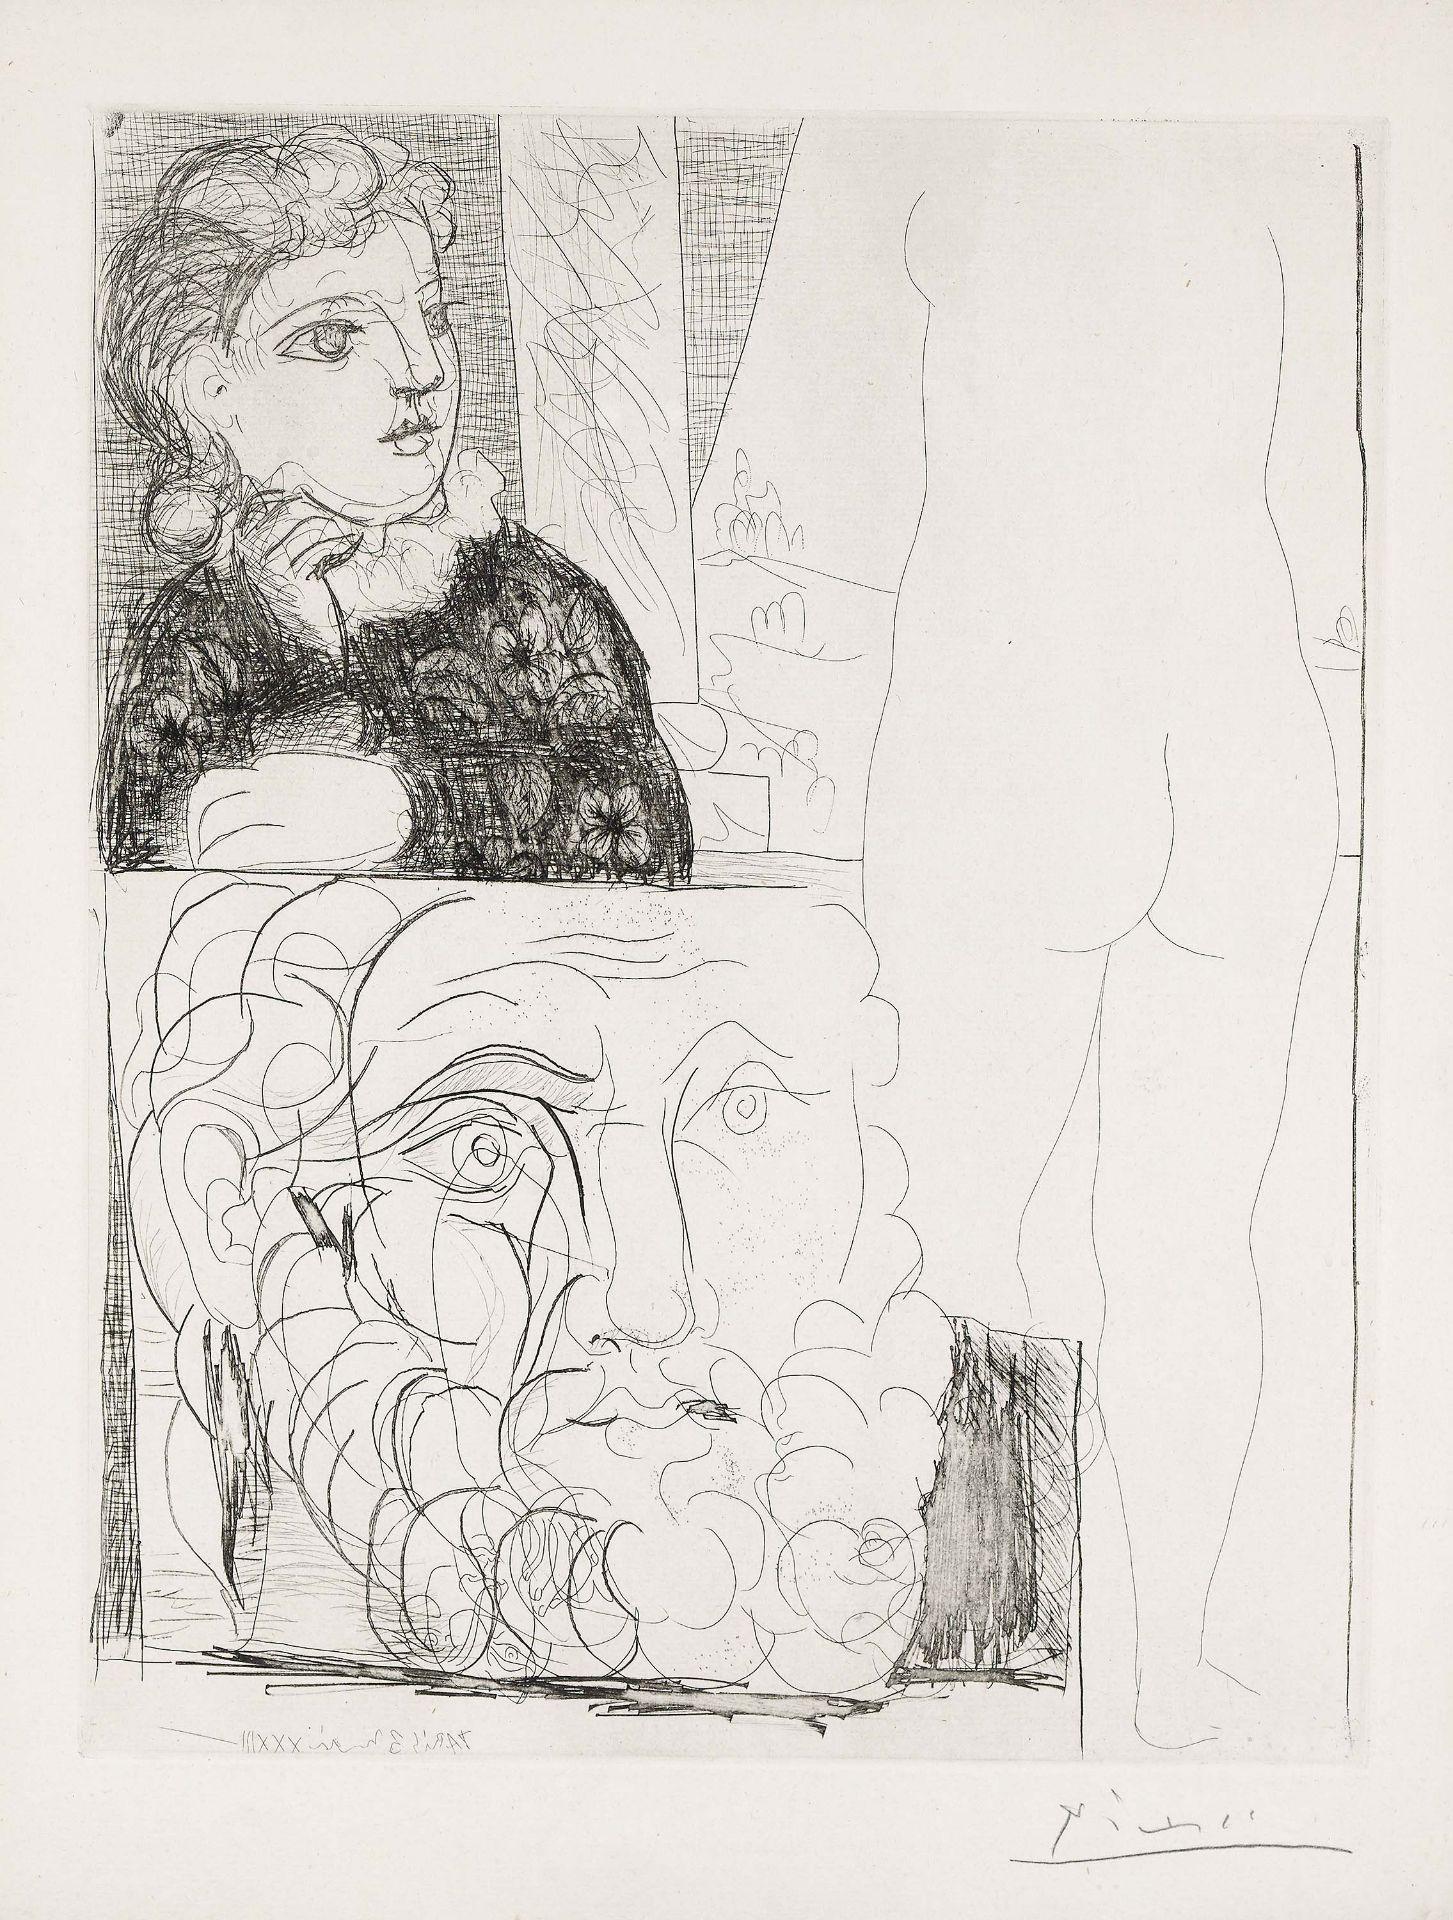 Picasso, Pablo1881 Malaga - 1973 MouginsLa bonne dans l'atelier de sculpture. 1933. Etching on